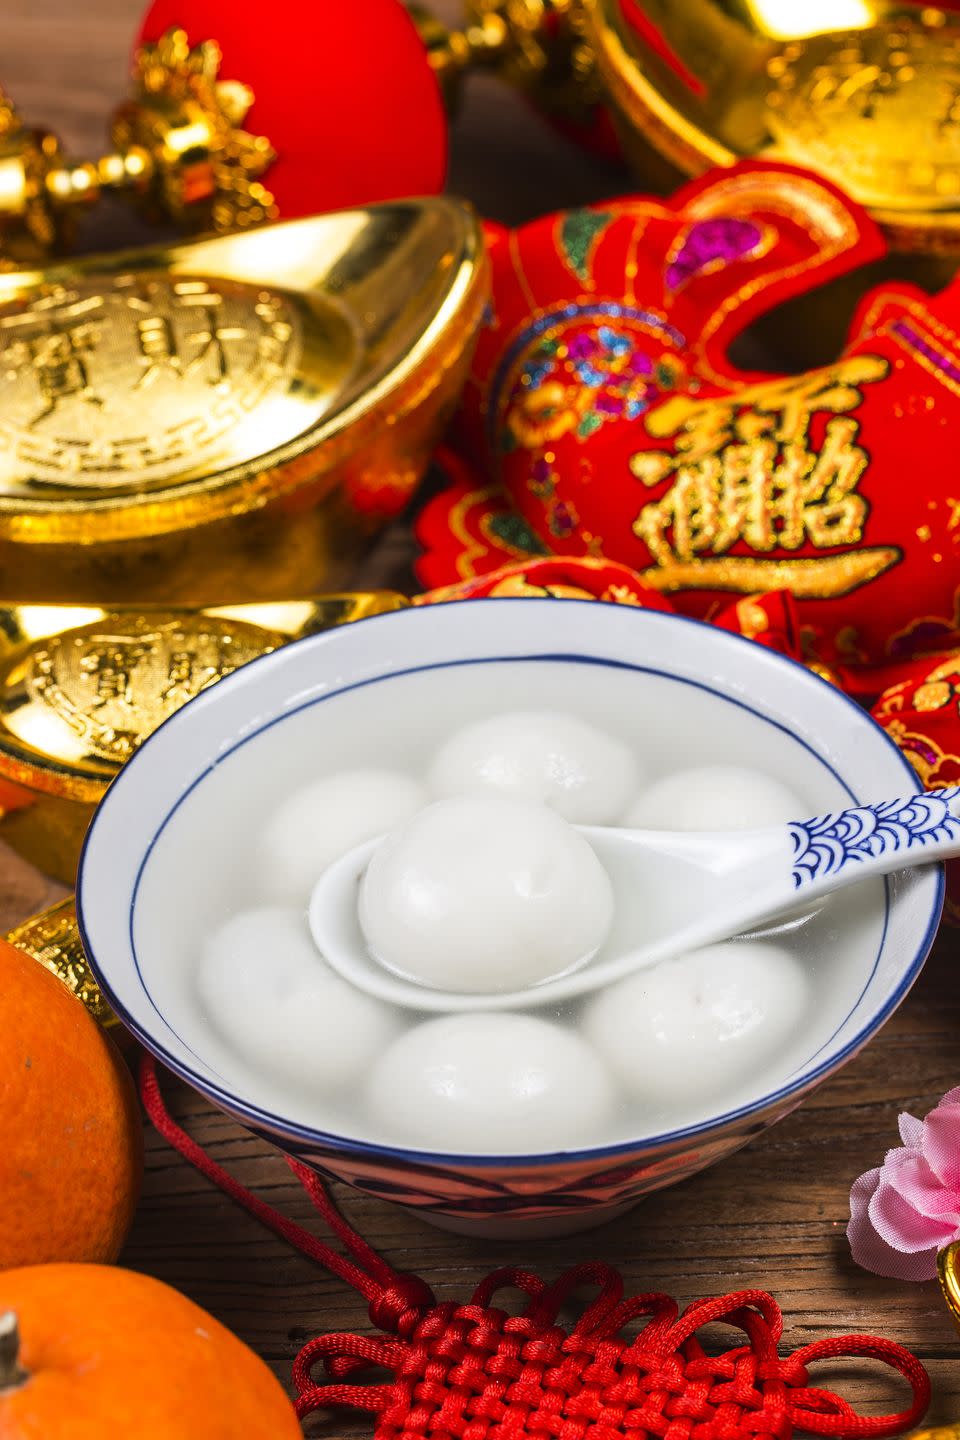 5) Sweet Rice Balls (Tangyuan)